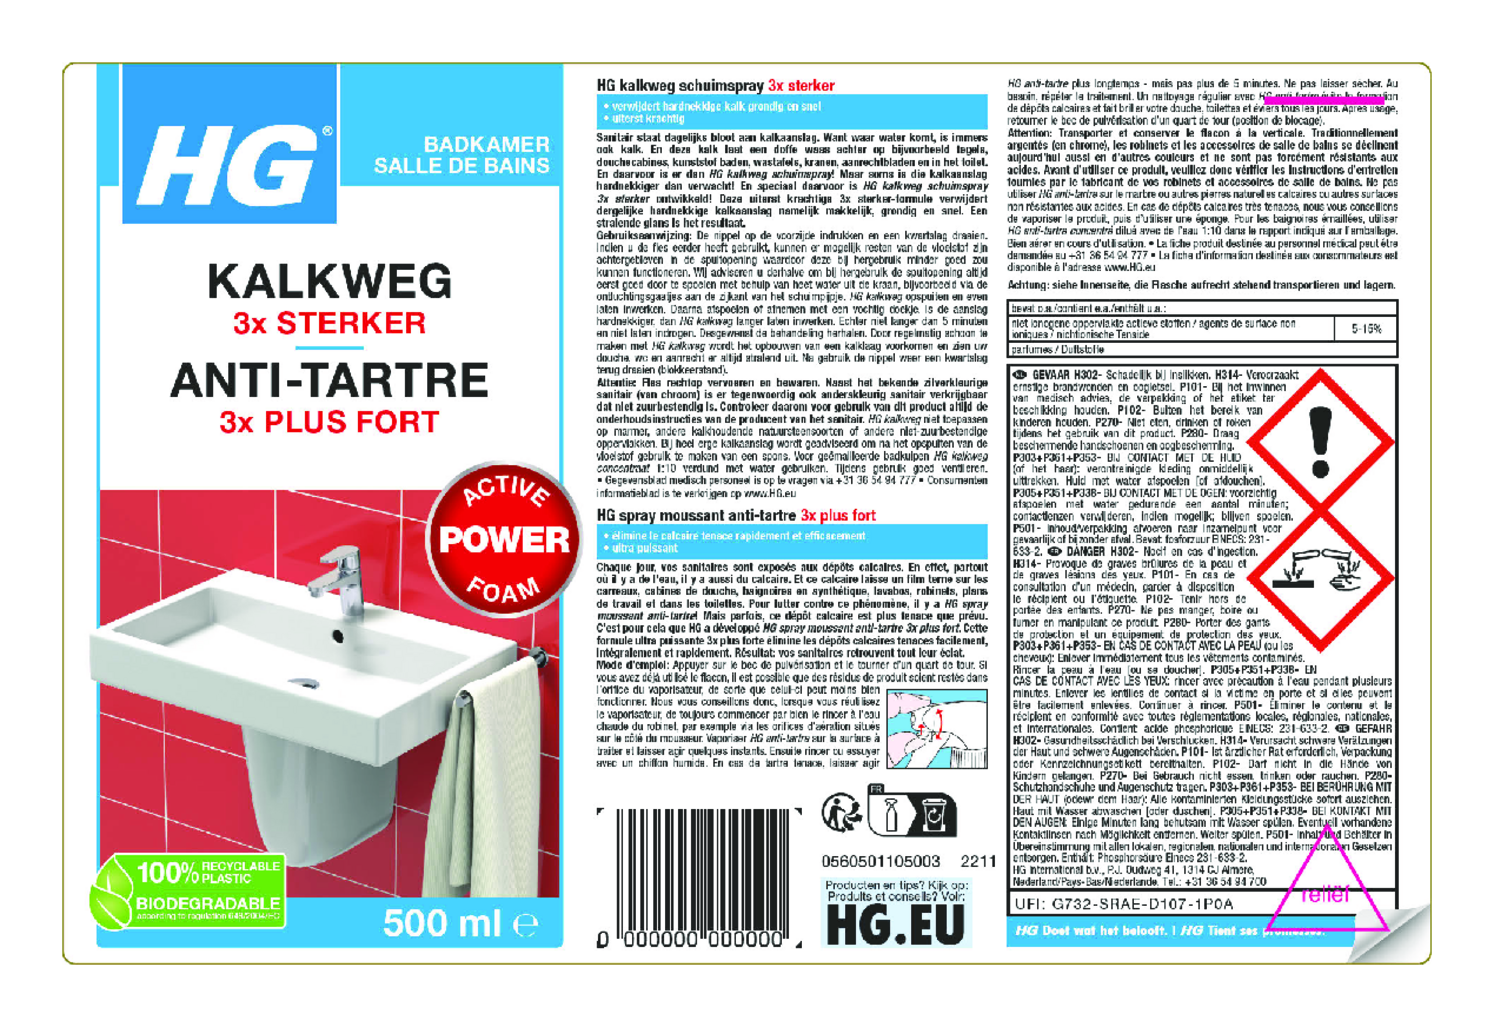 Badkamer Kalkweg Schuimspray - 3x sterker afbeelding van document #1, etiket